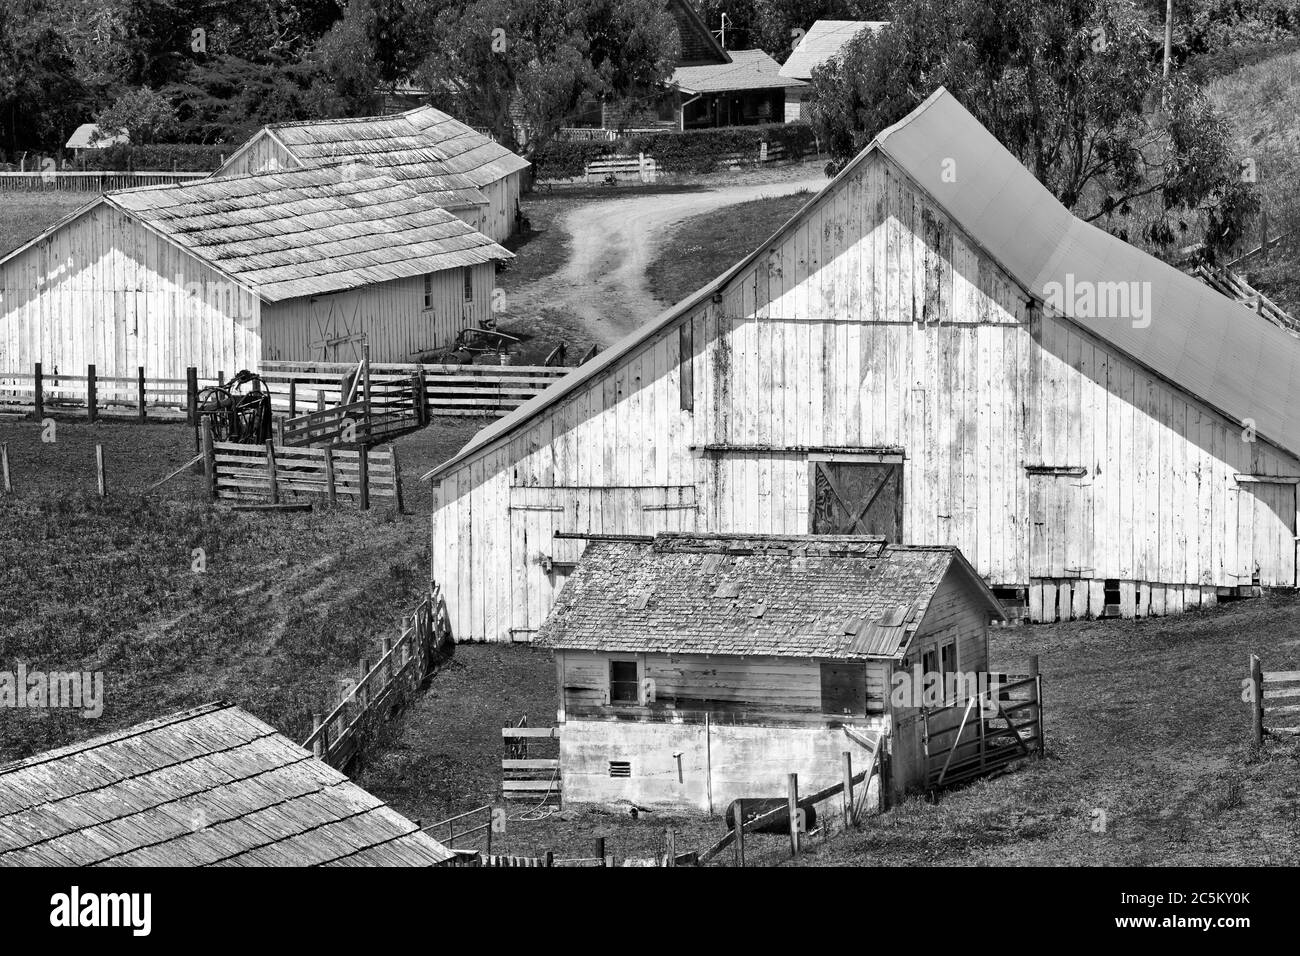 Ranch near Elk,Mendocino County,California,USA Stock Photo